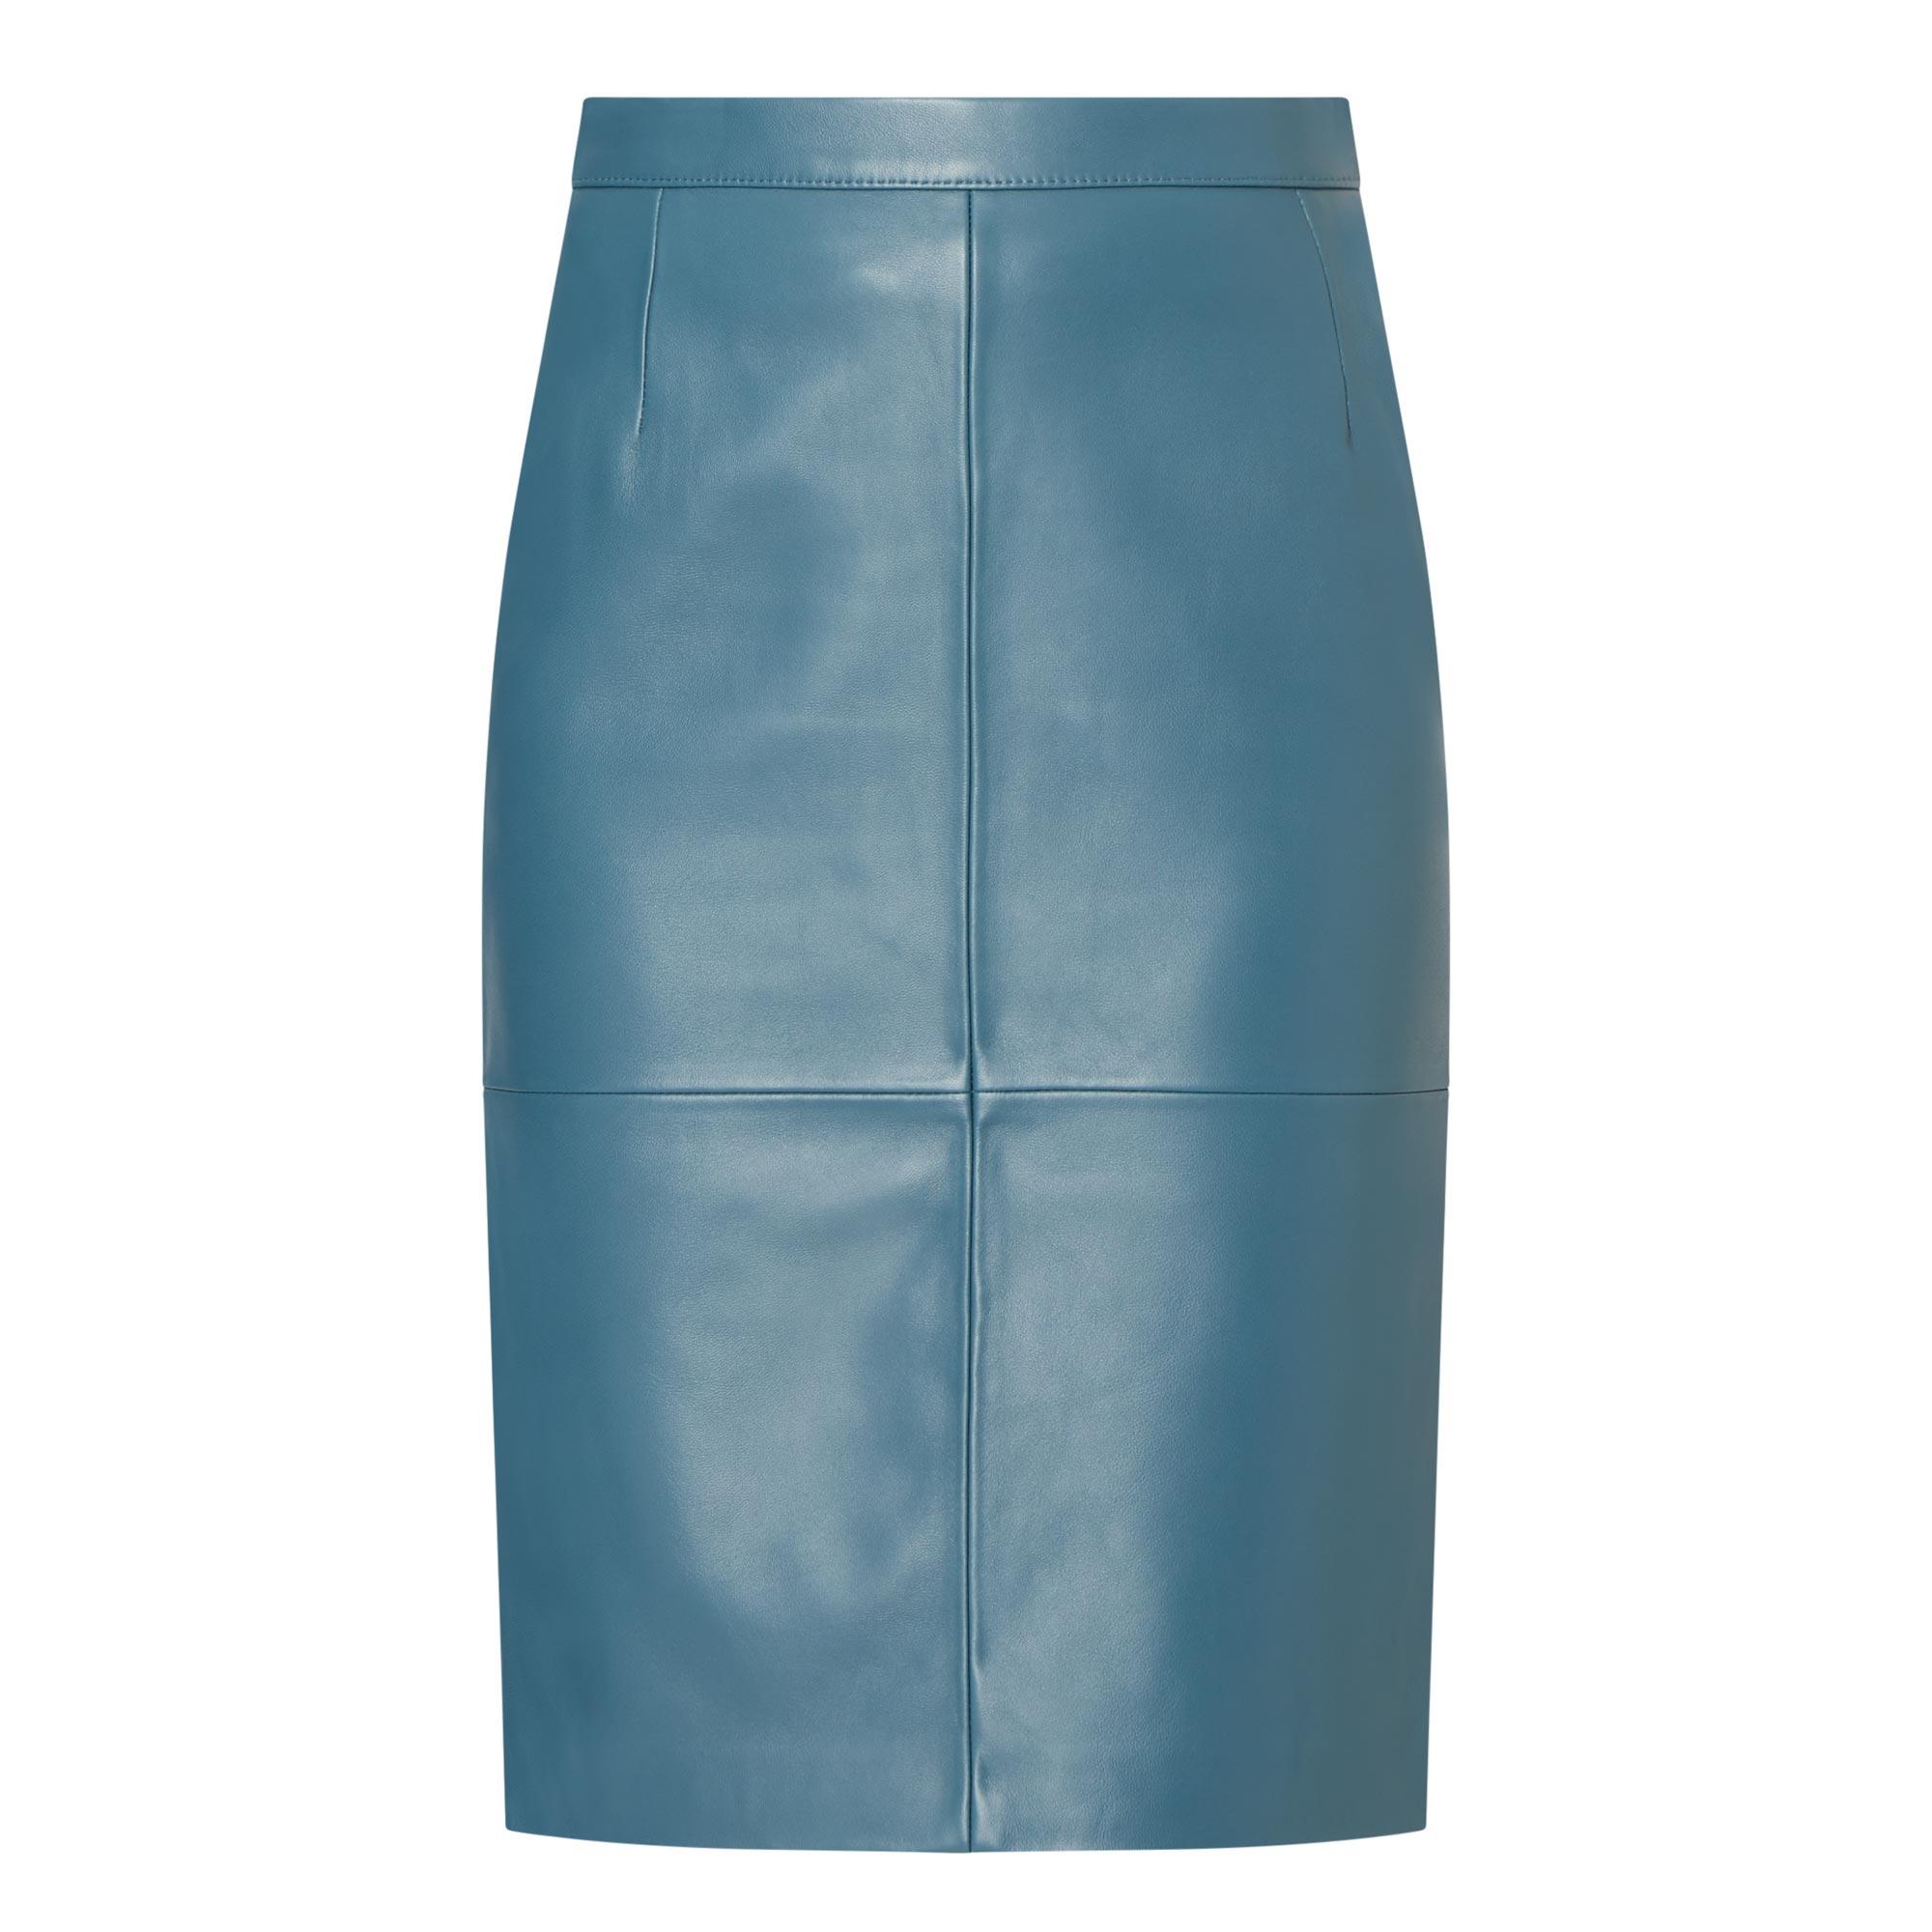 Seltoni Leather Skirt